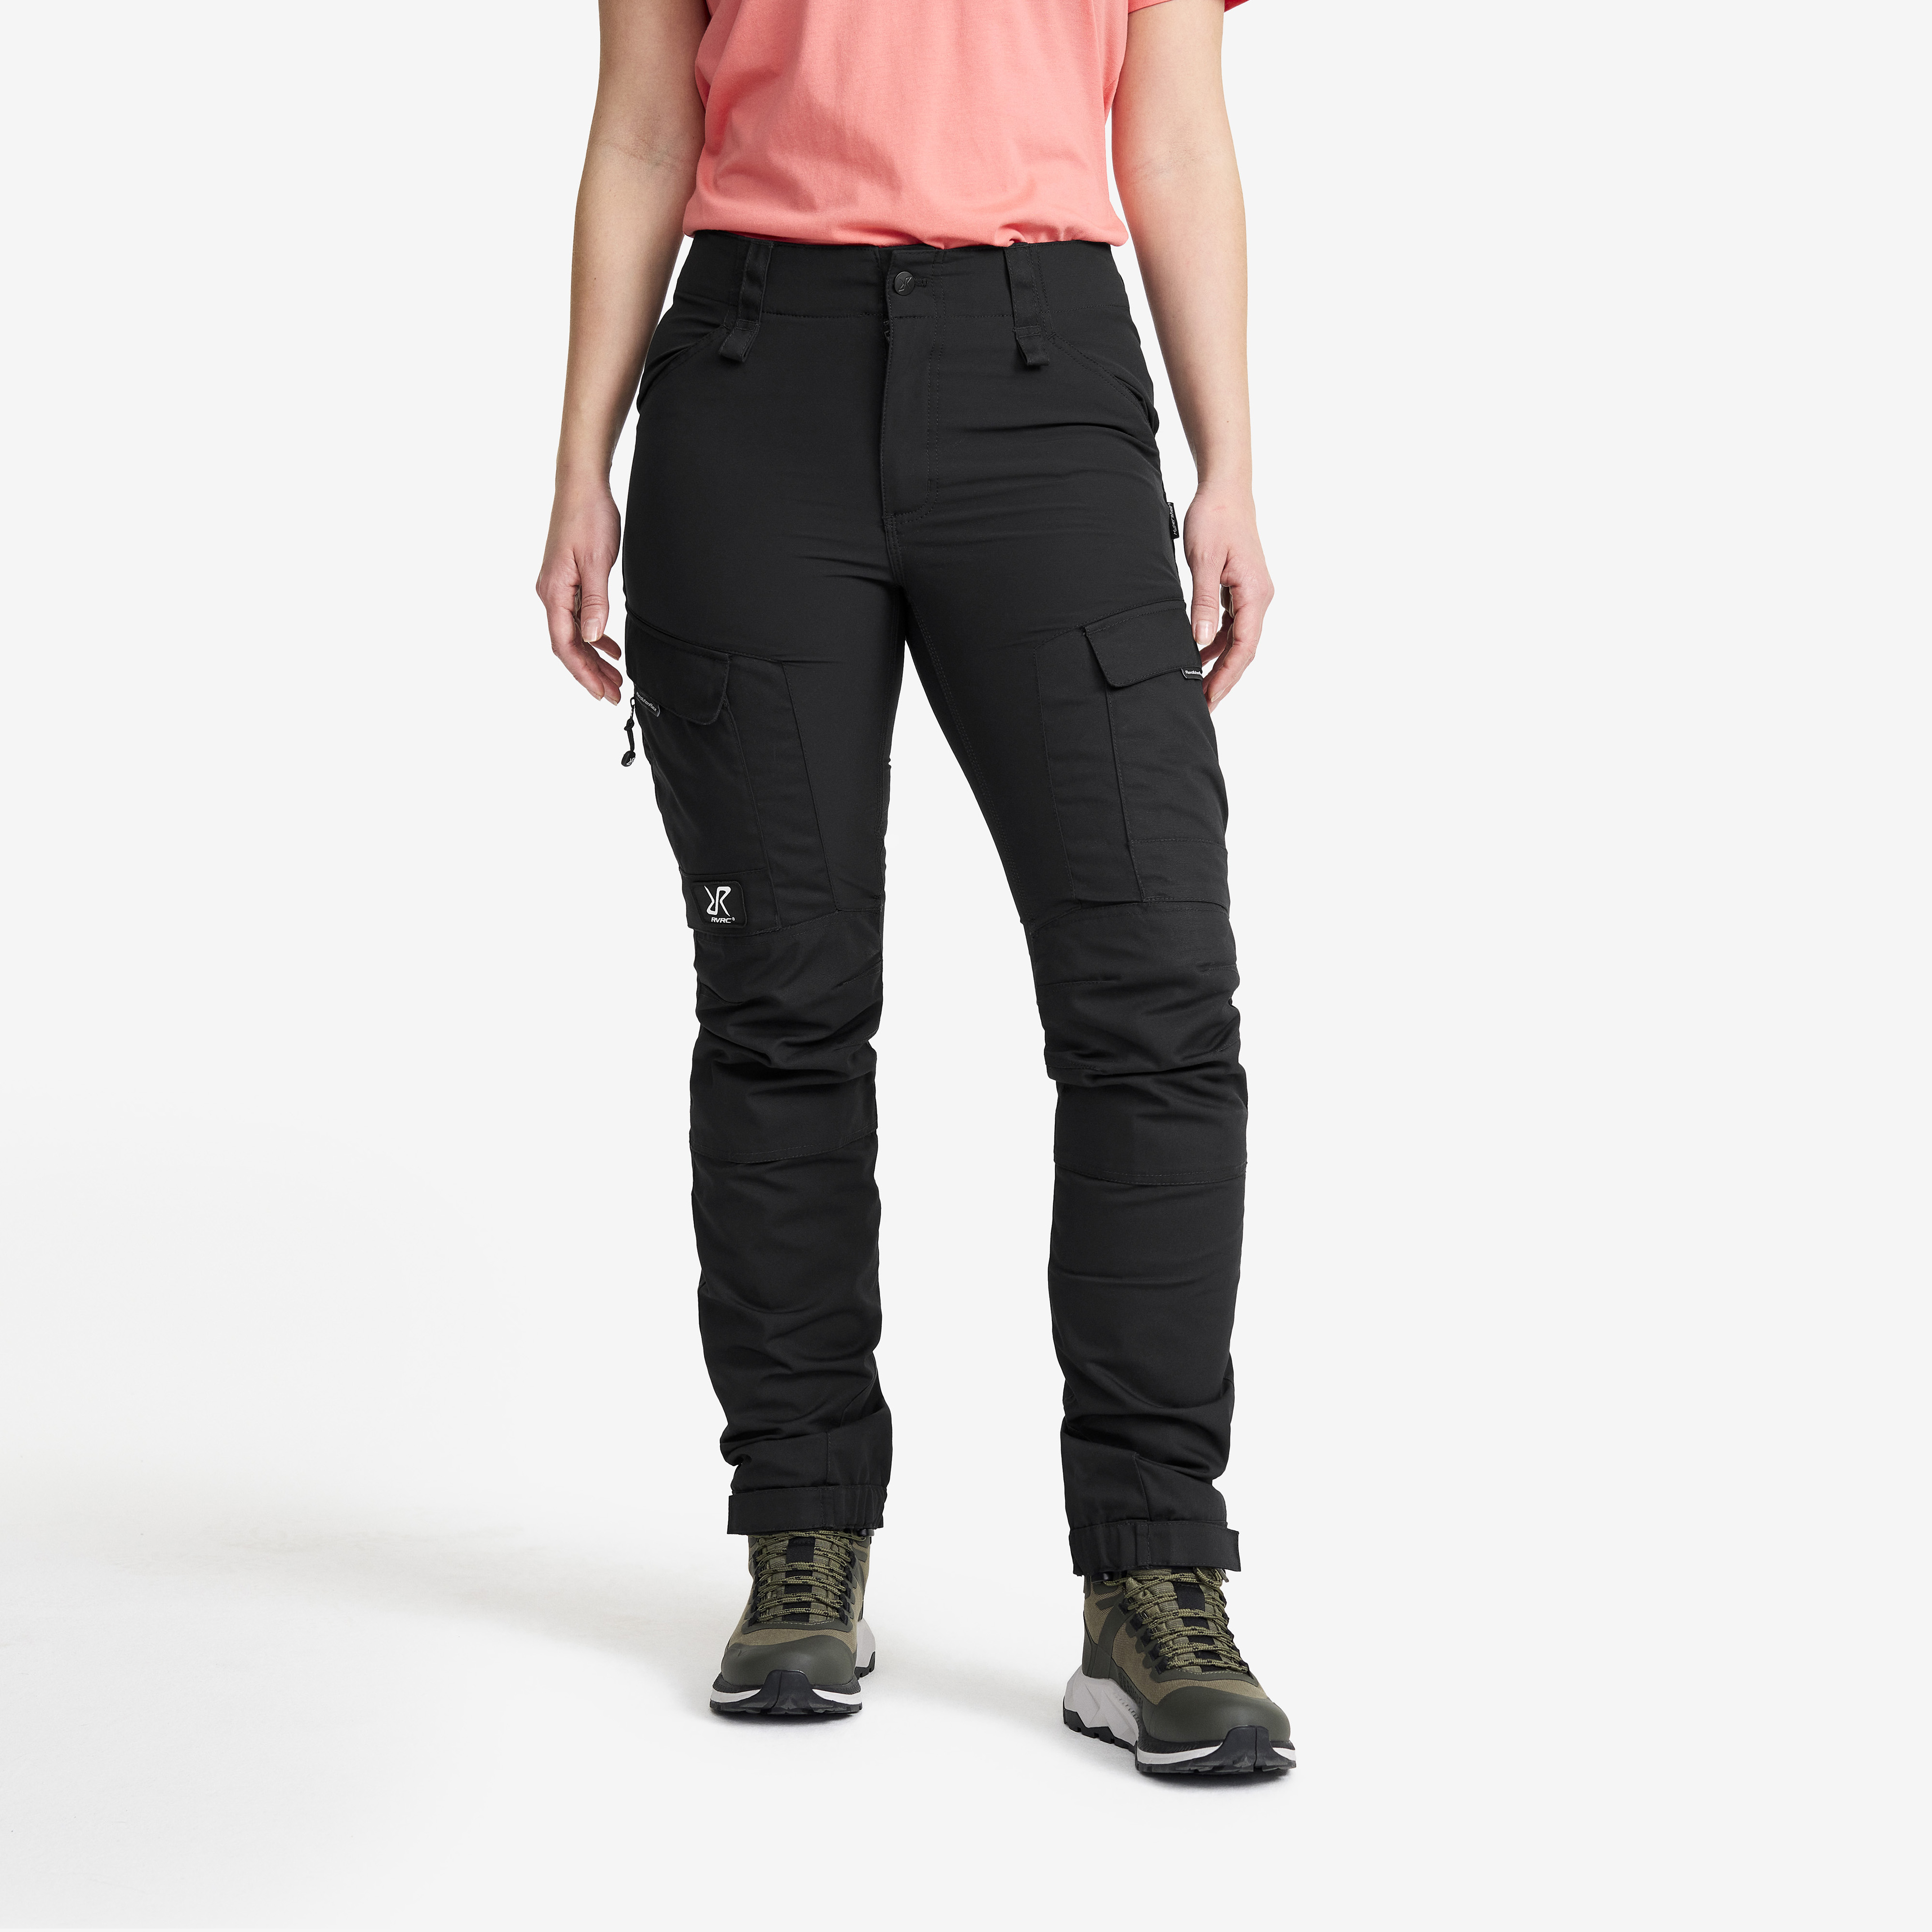 RVRC GP outdoor bukser for kvinder i sort